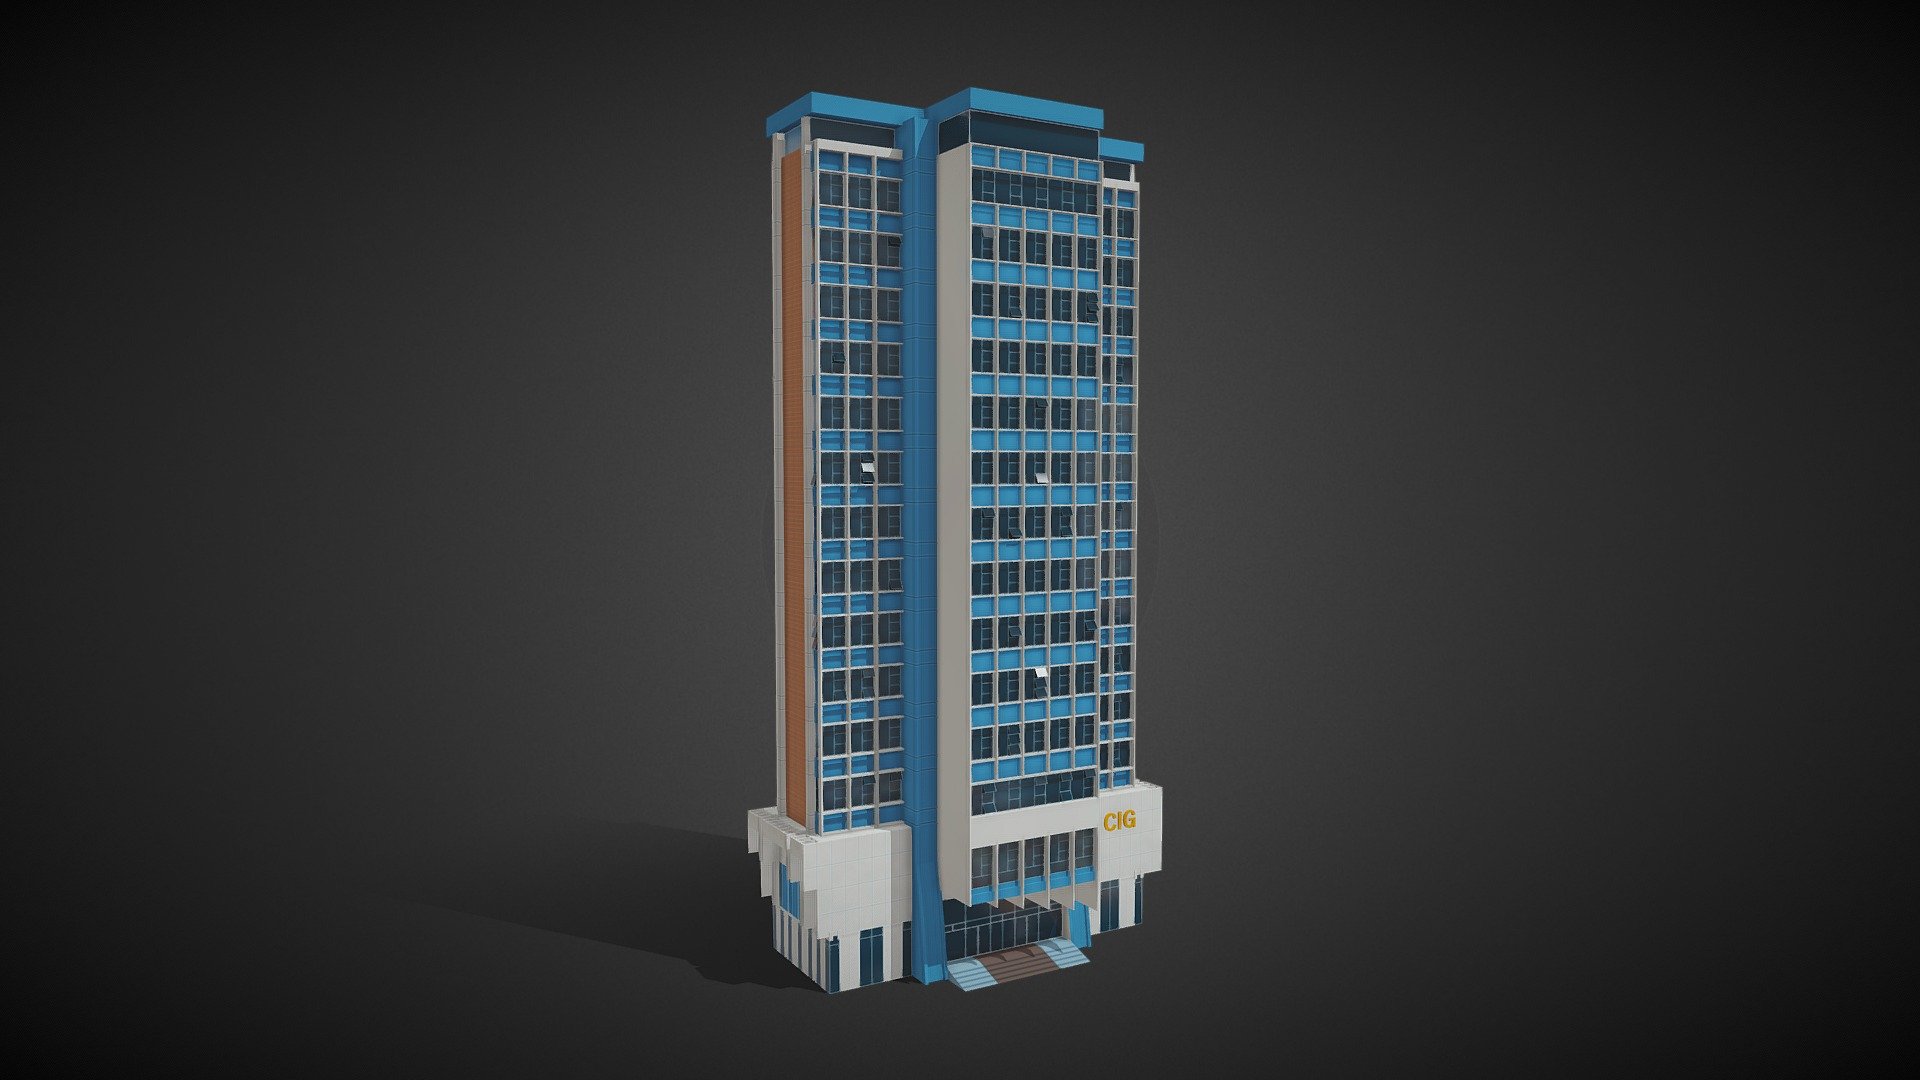 Building of Guatemala - Camara De Industria De Guatemala - 3D model by AhmadWalker 3d model